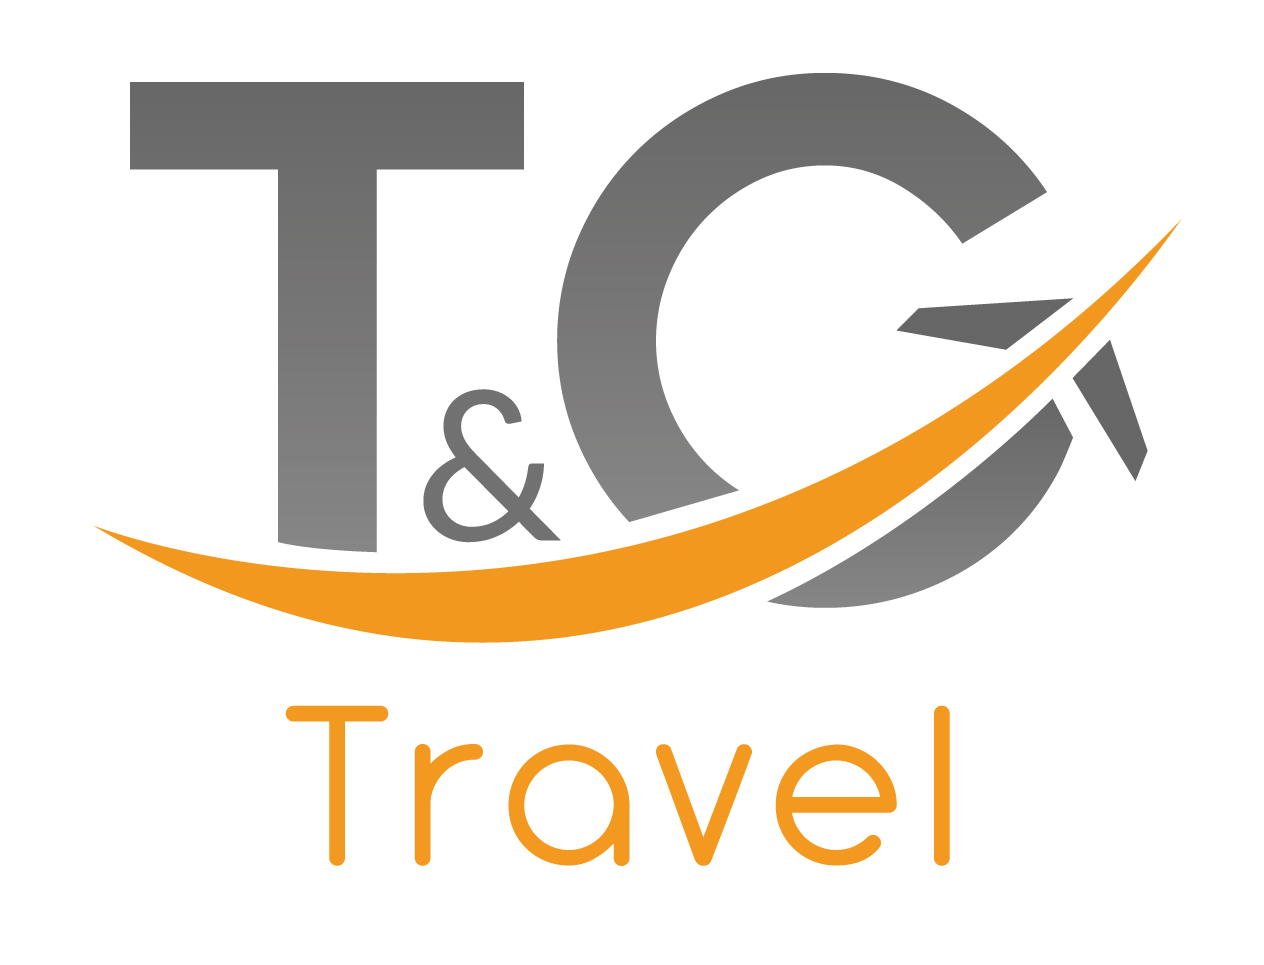 t&g travel insurance